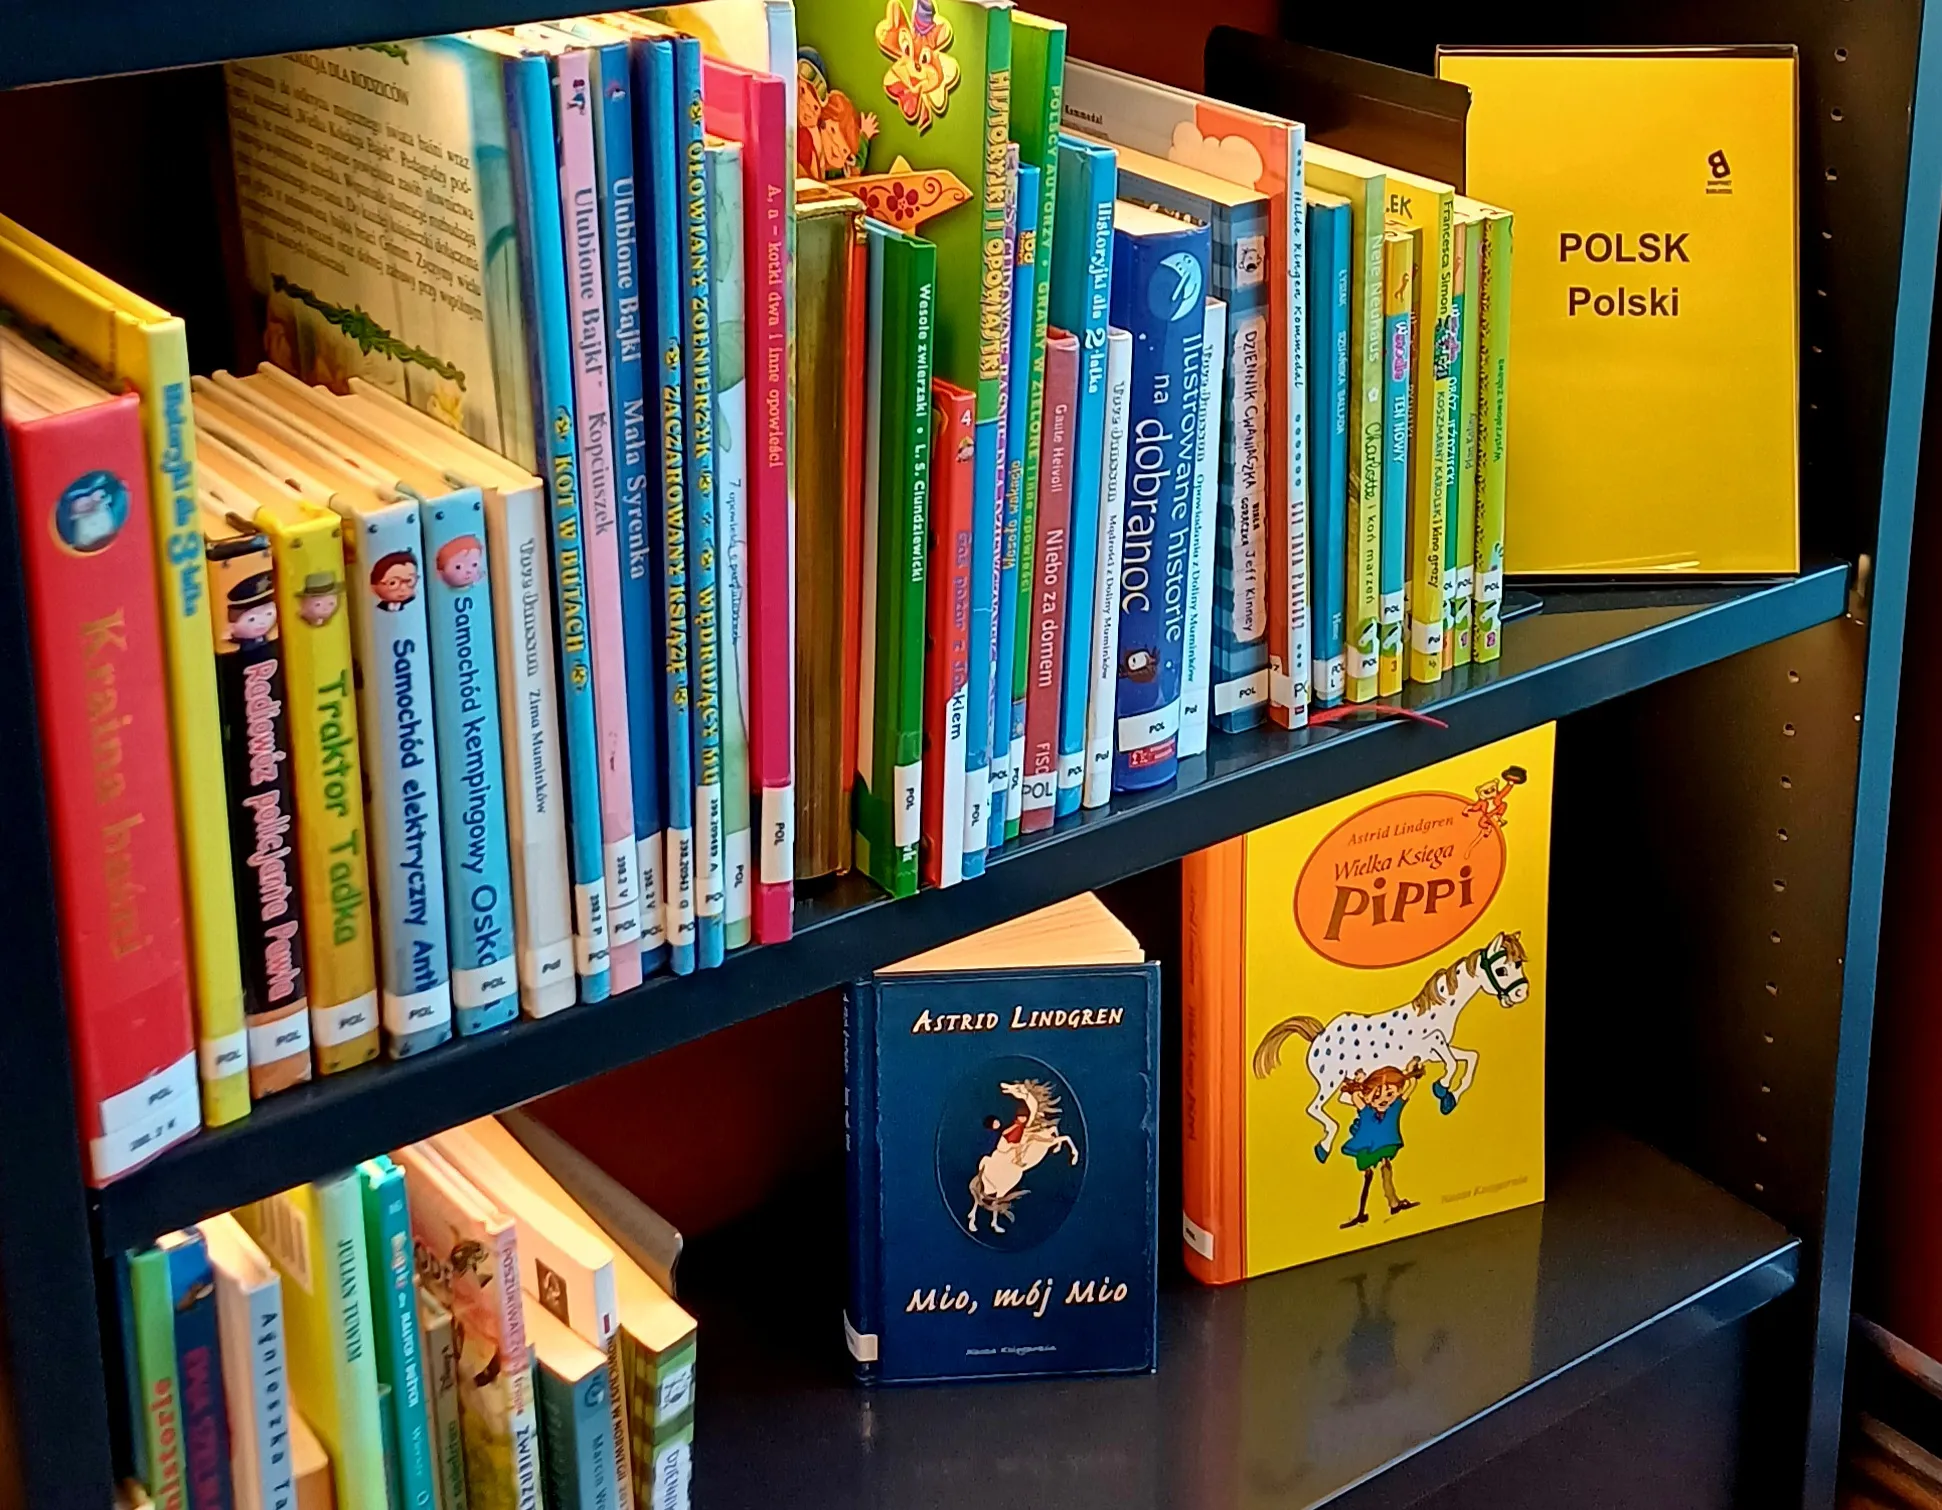 Knihy v poľskom jazyku v nórskej knižnici: Viacjazyčná knižnica dostupná pre každého